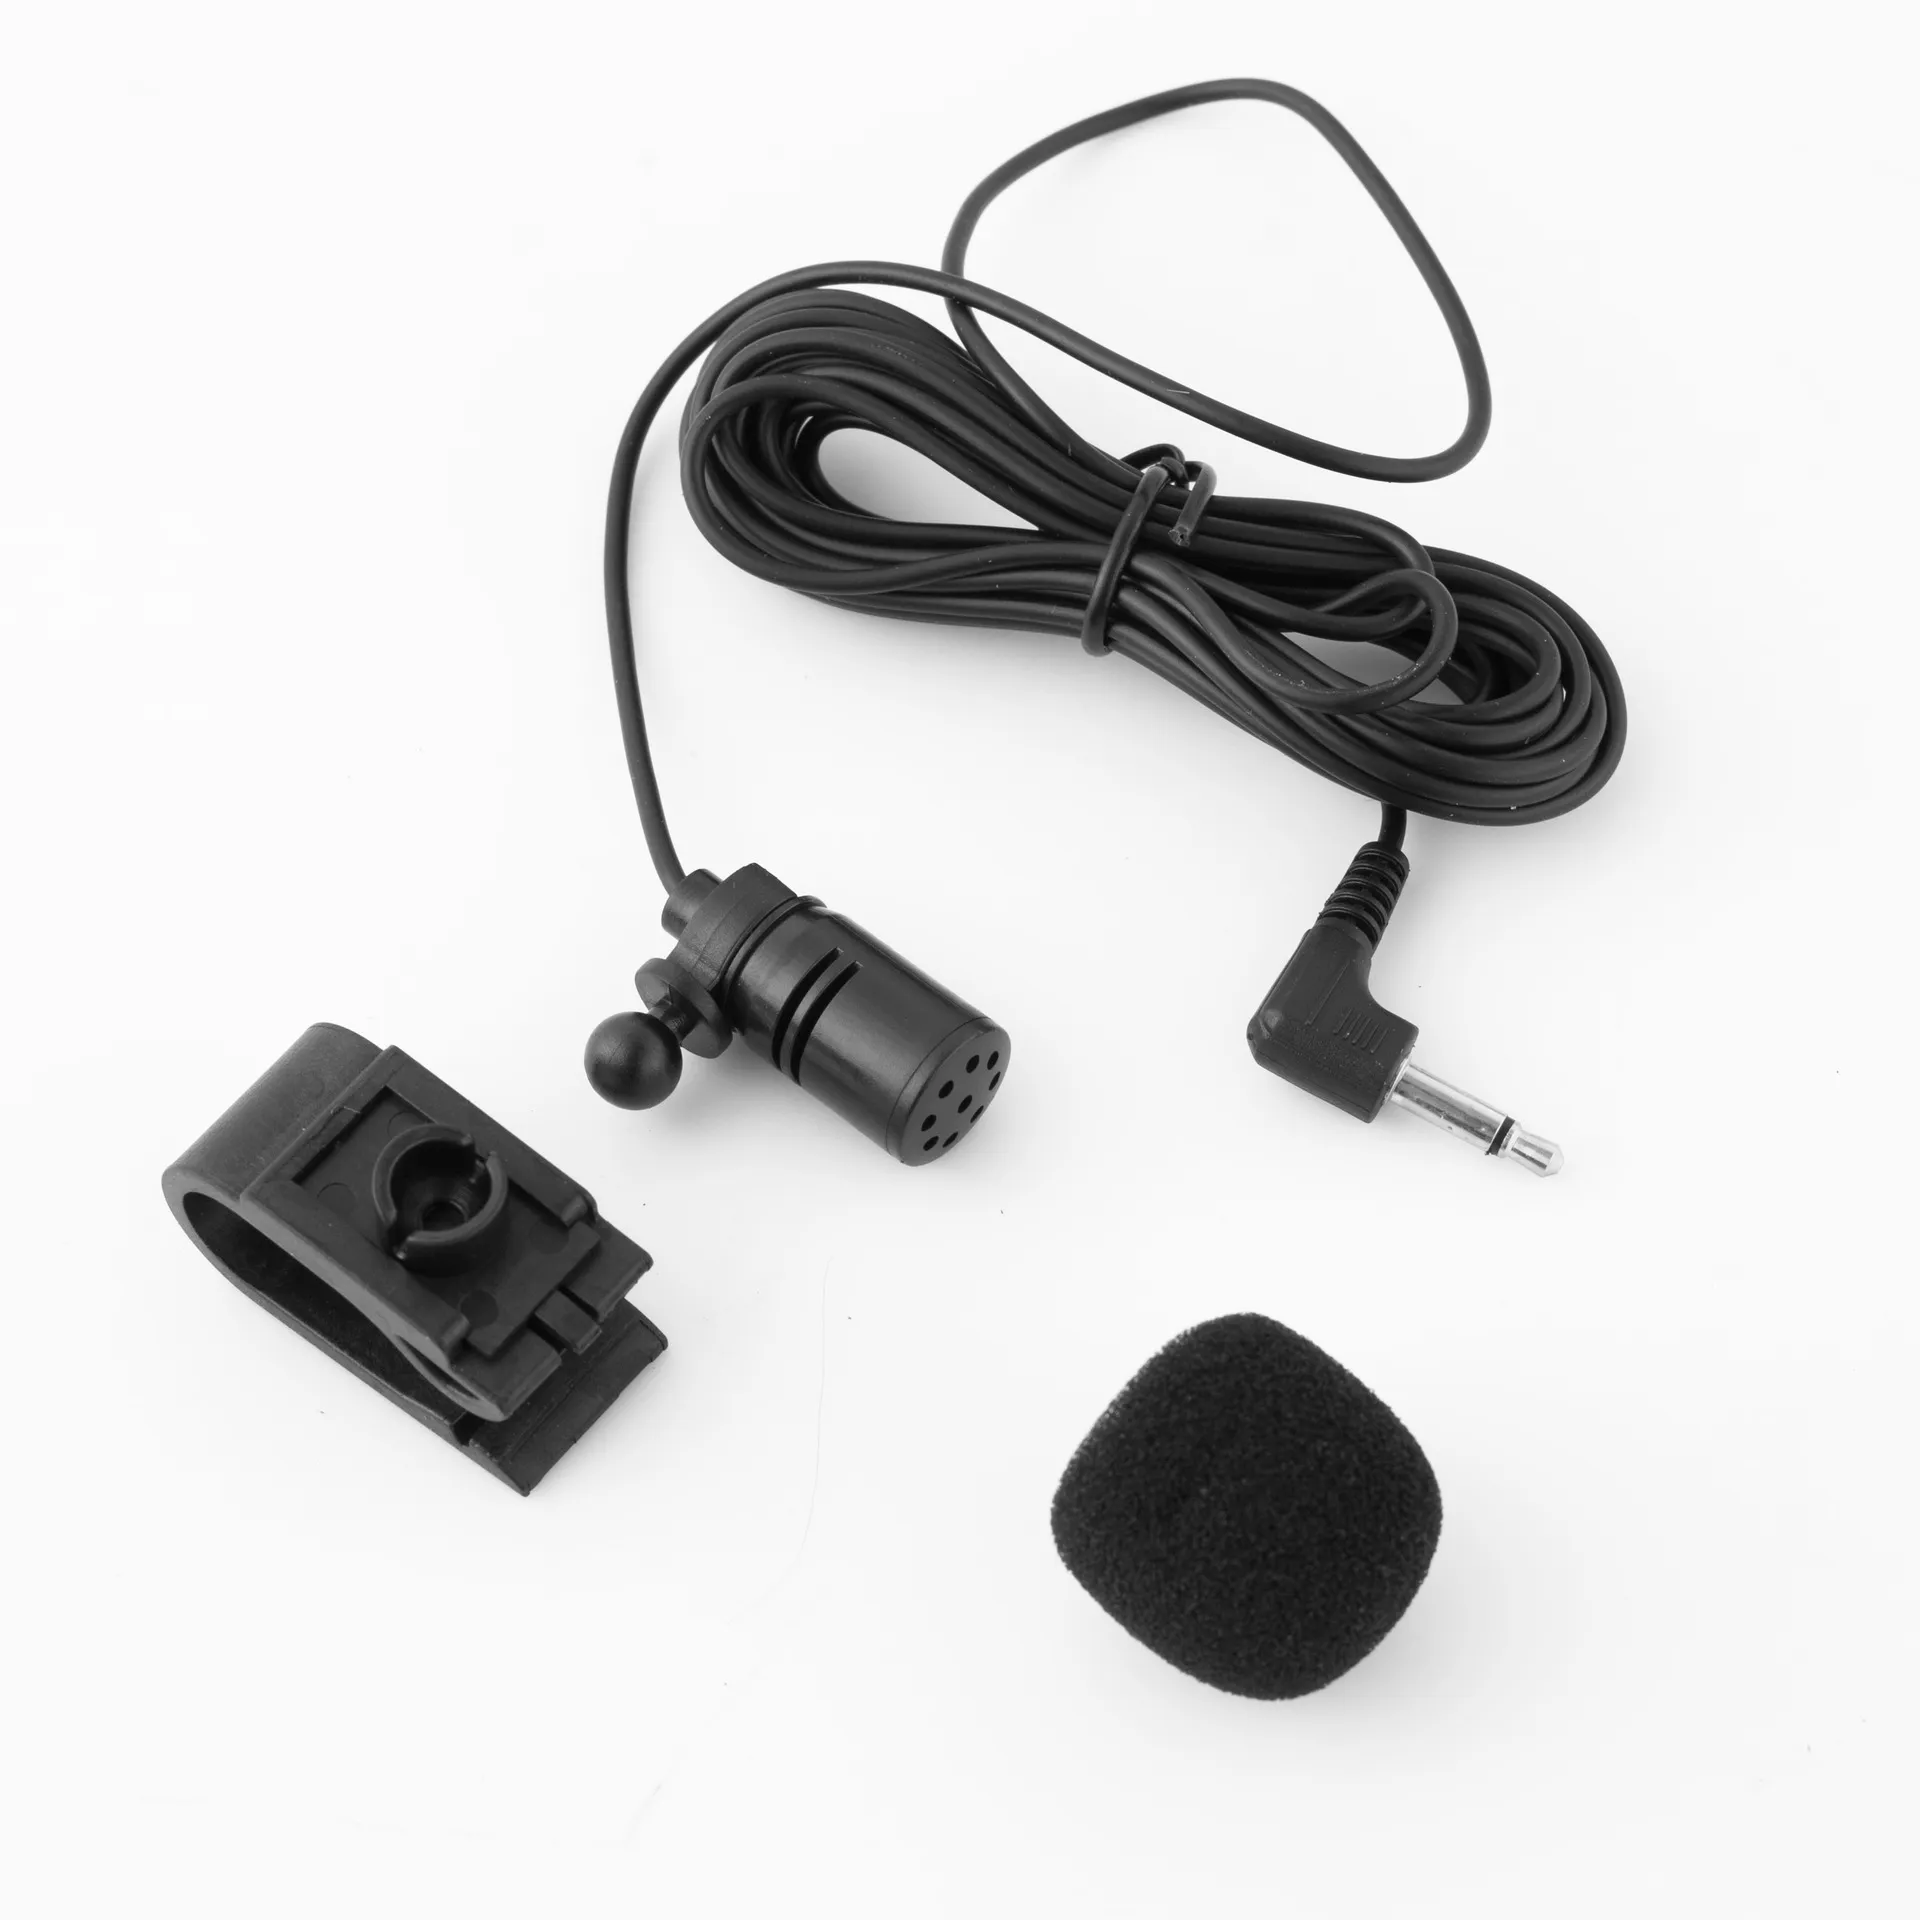 Microphone audio de voiture professionnel prise jack 3,5 mm micro stéréo mini microphone externe filaire pour auto DVD radio positionnement interphone navigation Aud yy28